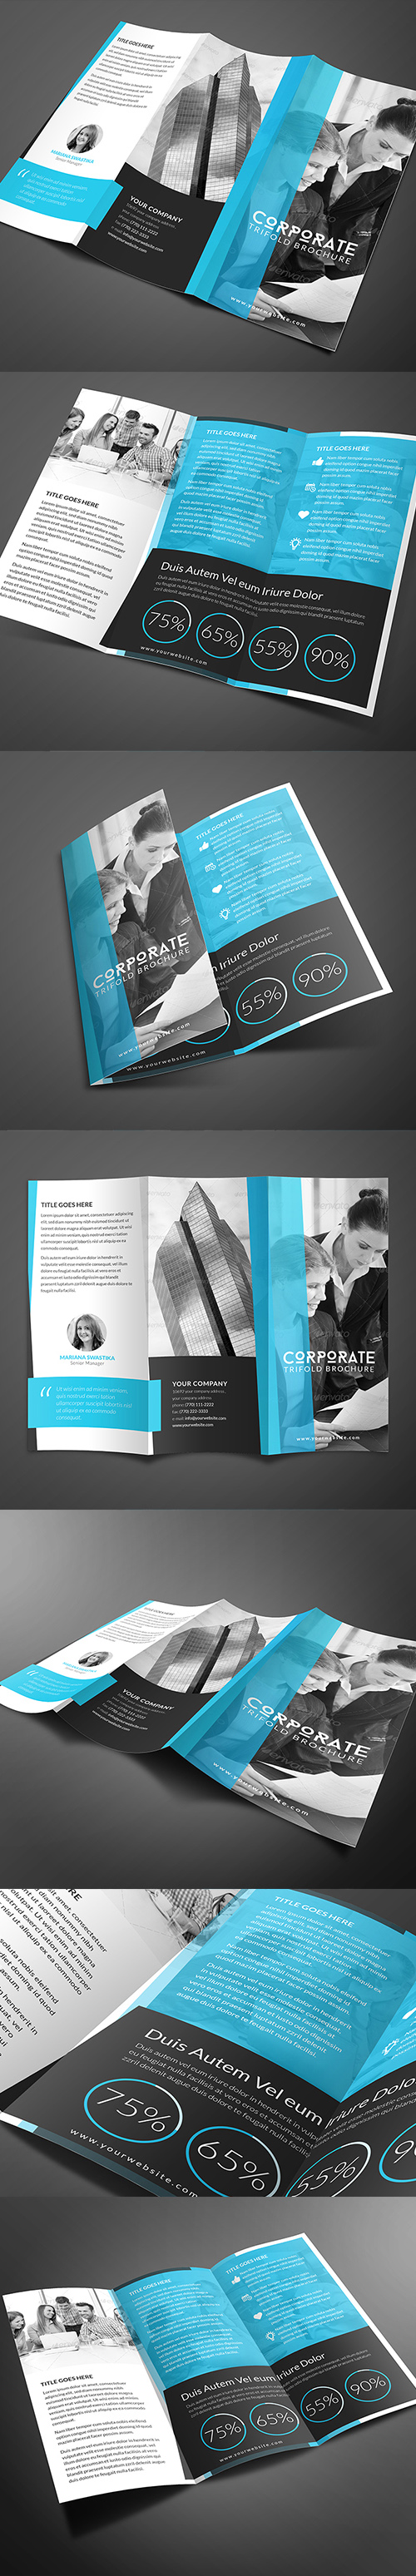 Corporate Brochure Template